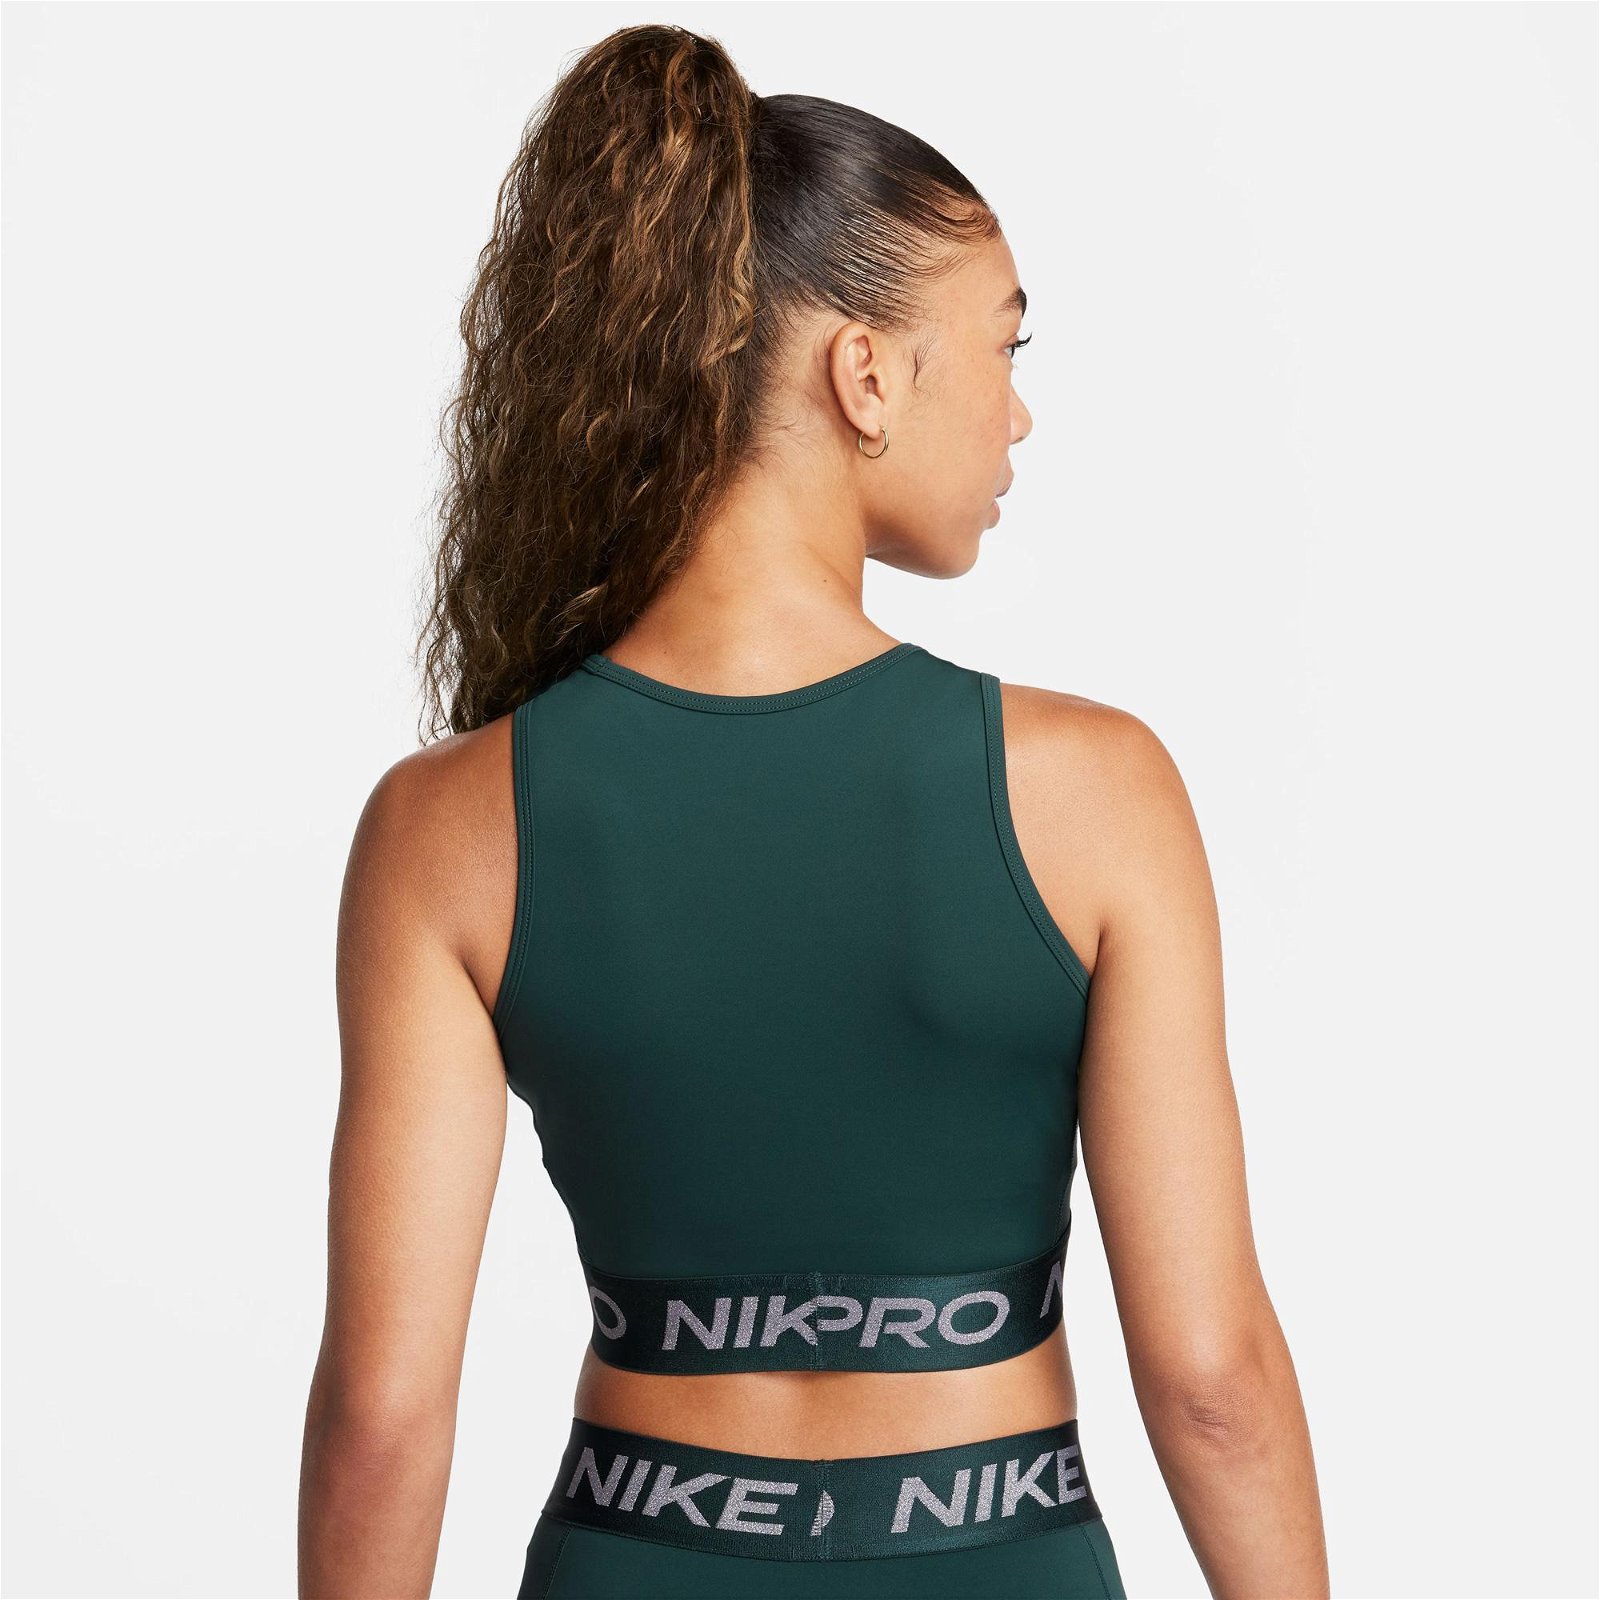 Nike Pro Dri-FIT Crop Tank Shine Kadın Yeşil Bra